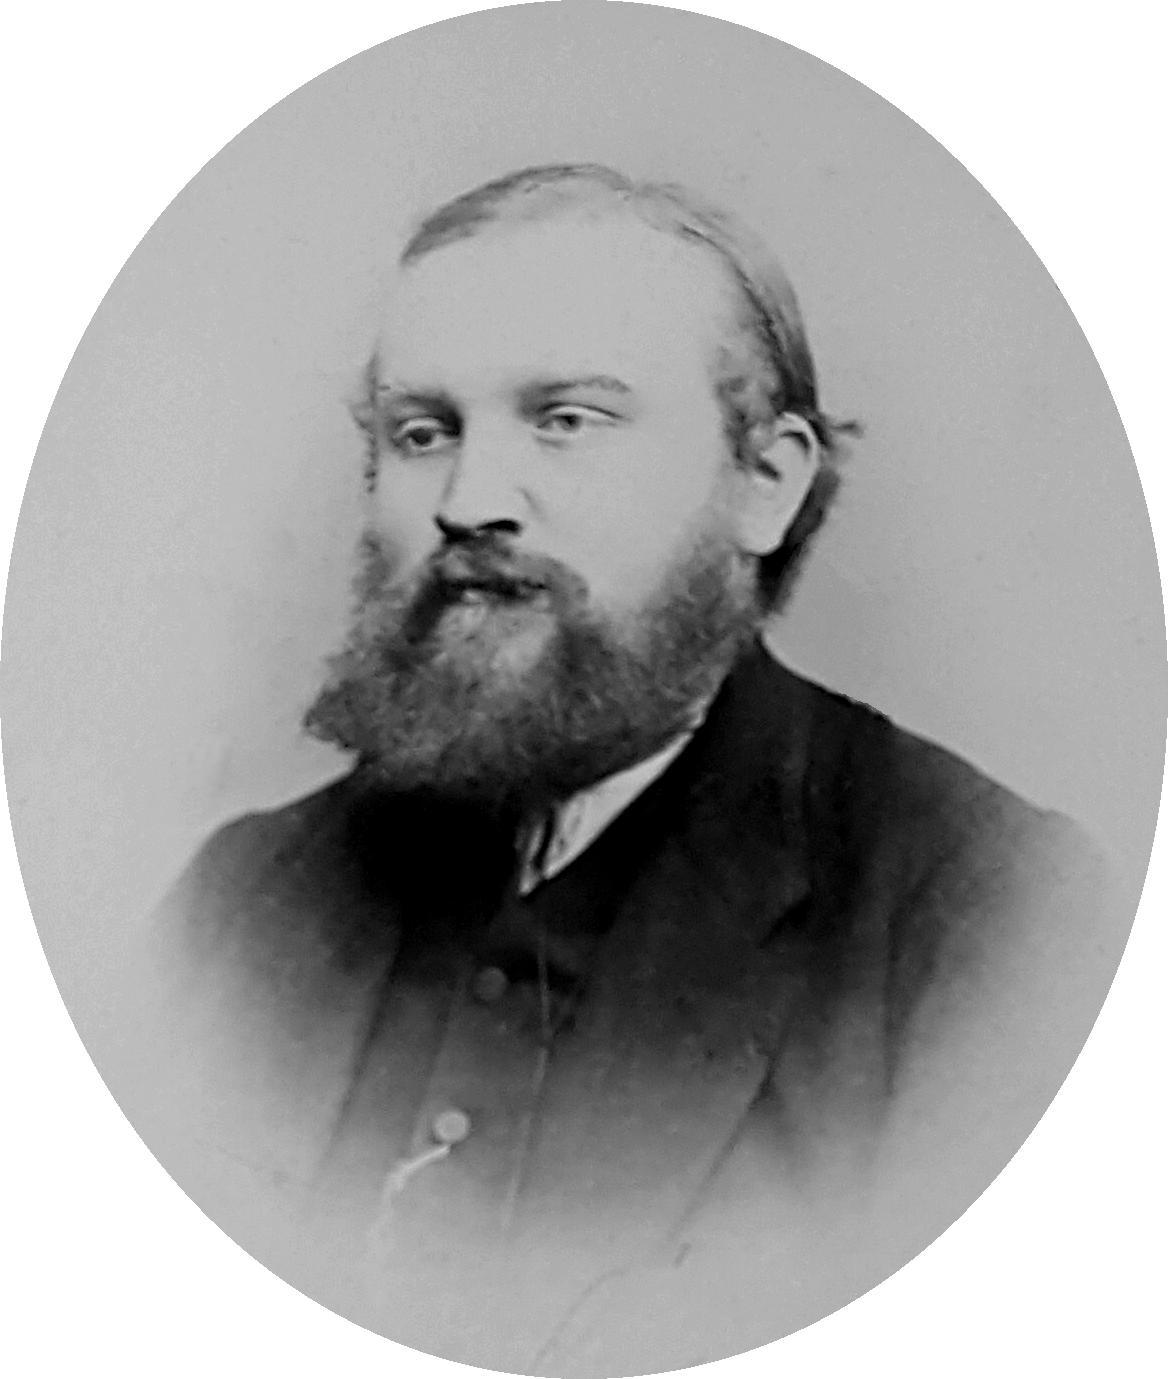 August von Spiessen